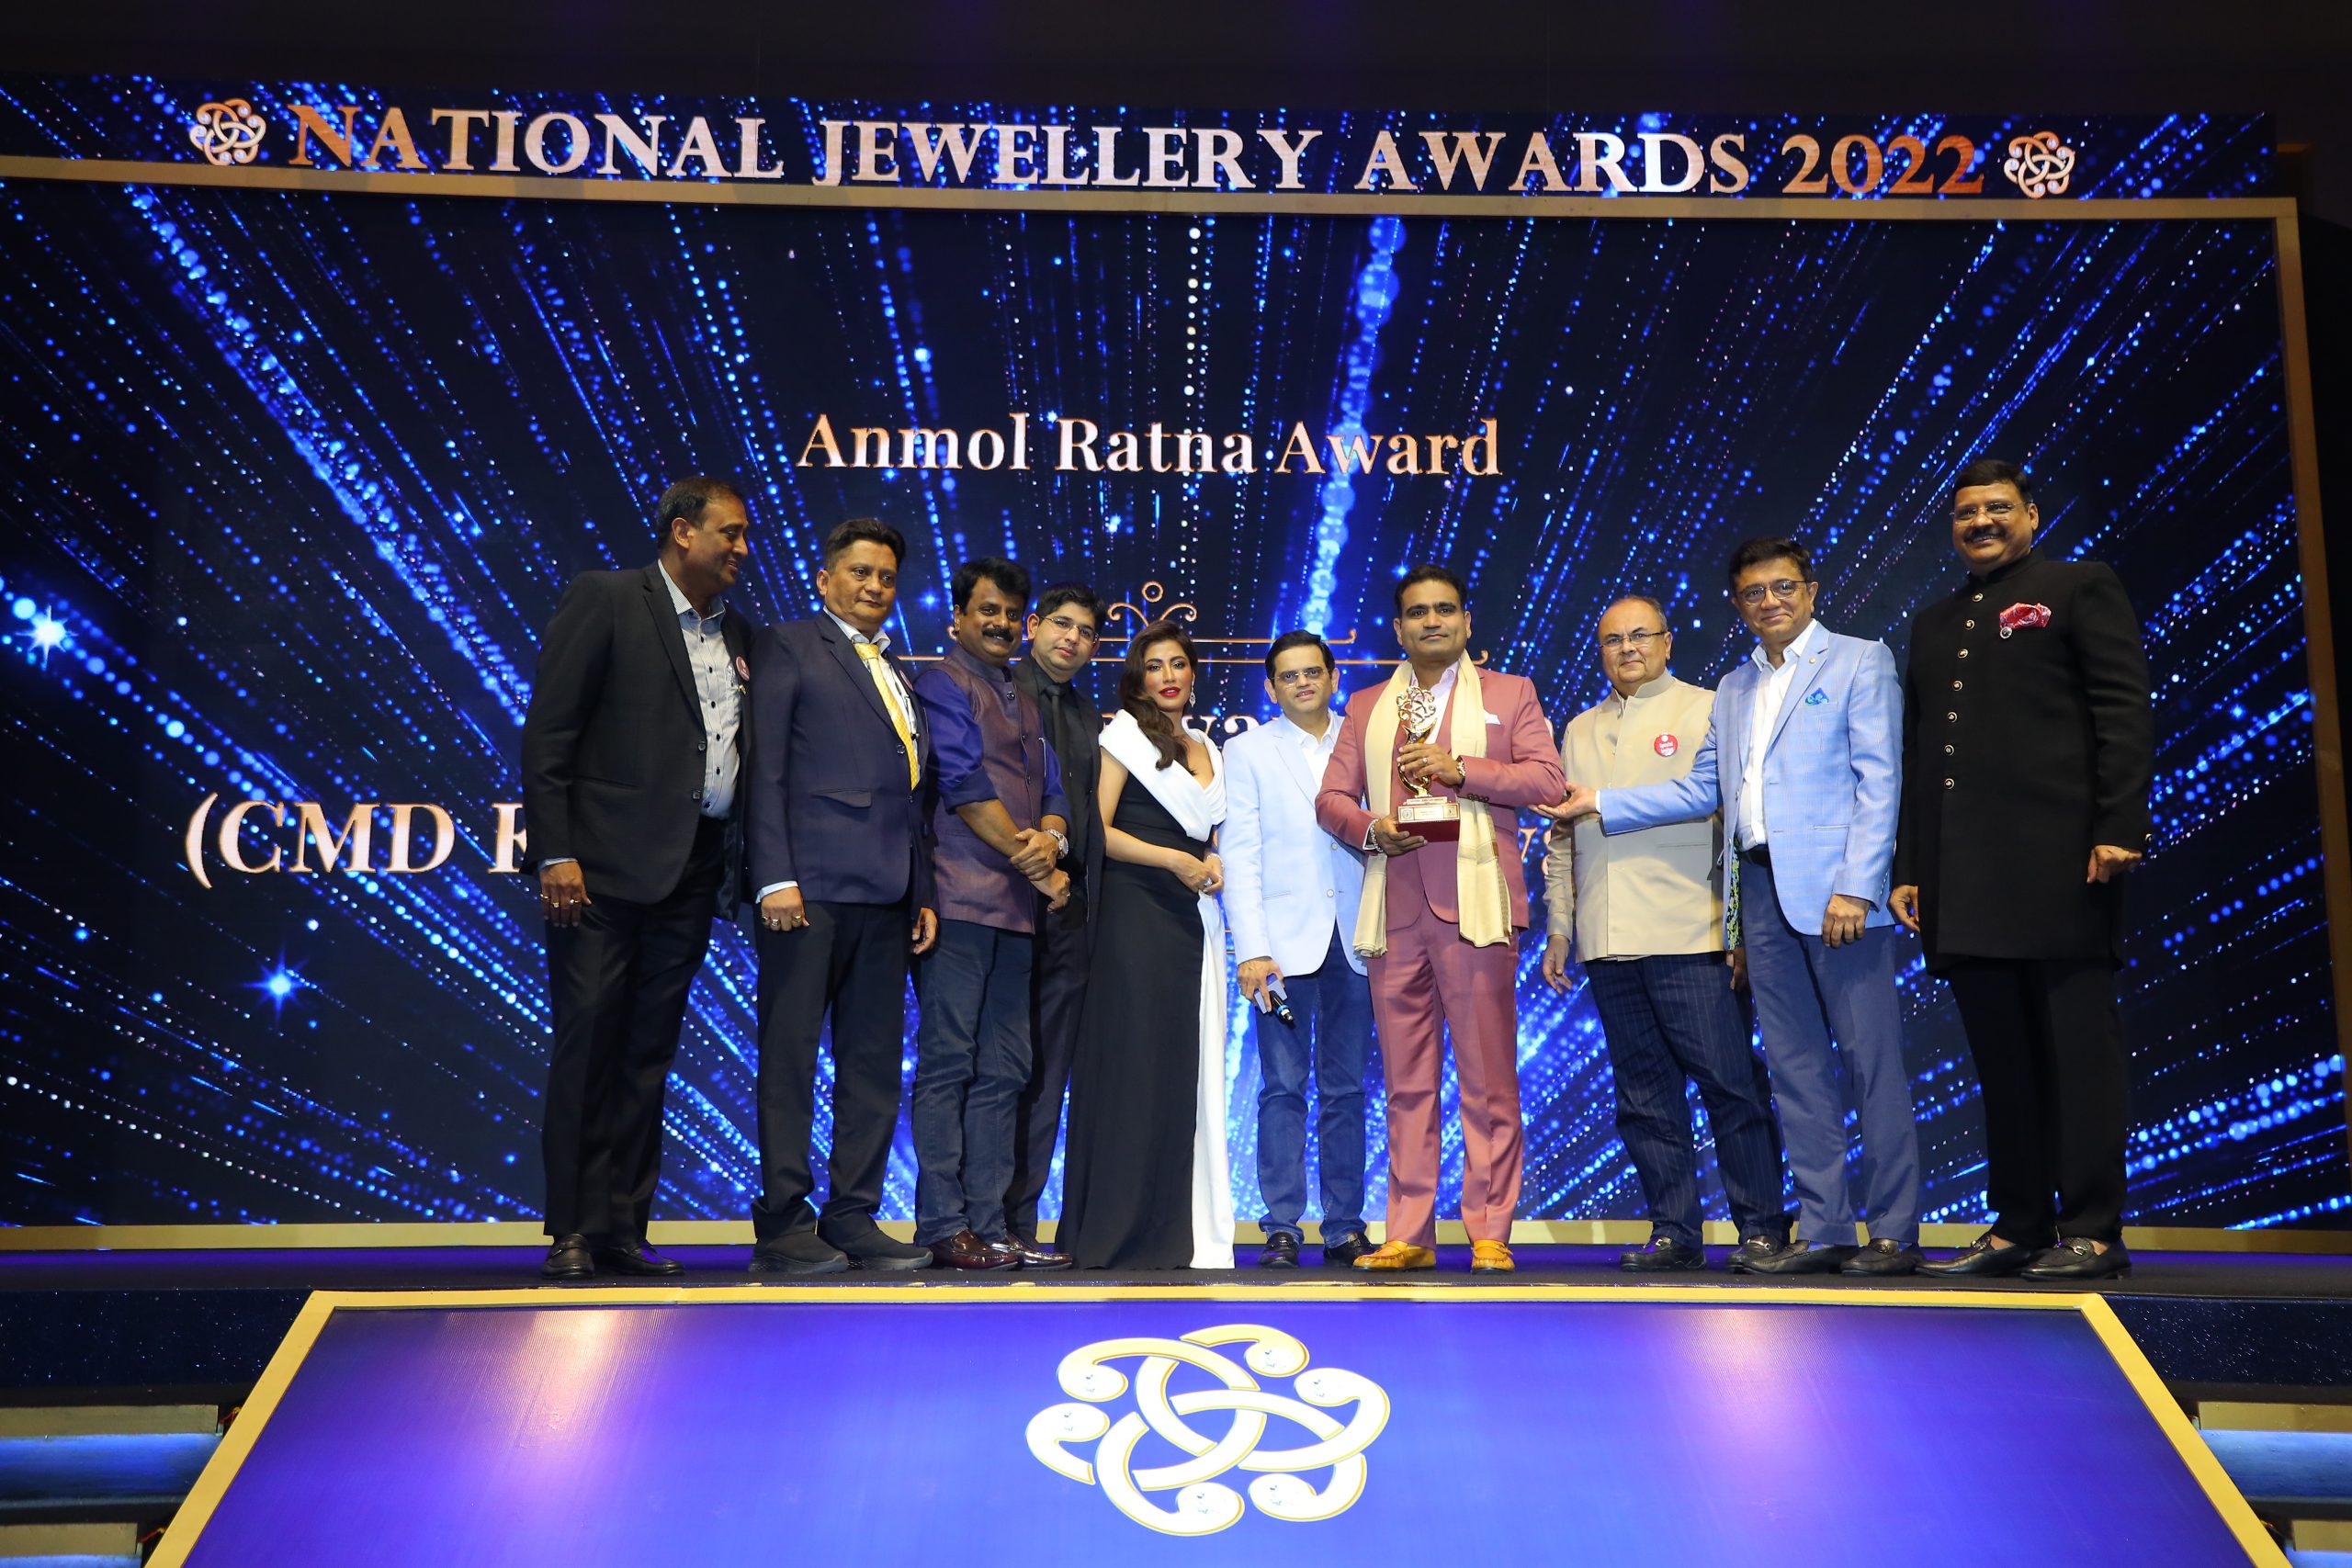 T S Kalyanaraman presented the ‘Anmol Ratna’ Award at National Jewellery Awards 2022